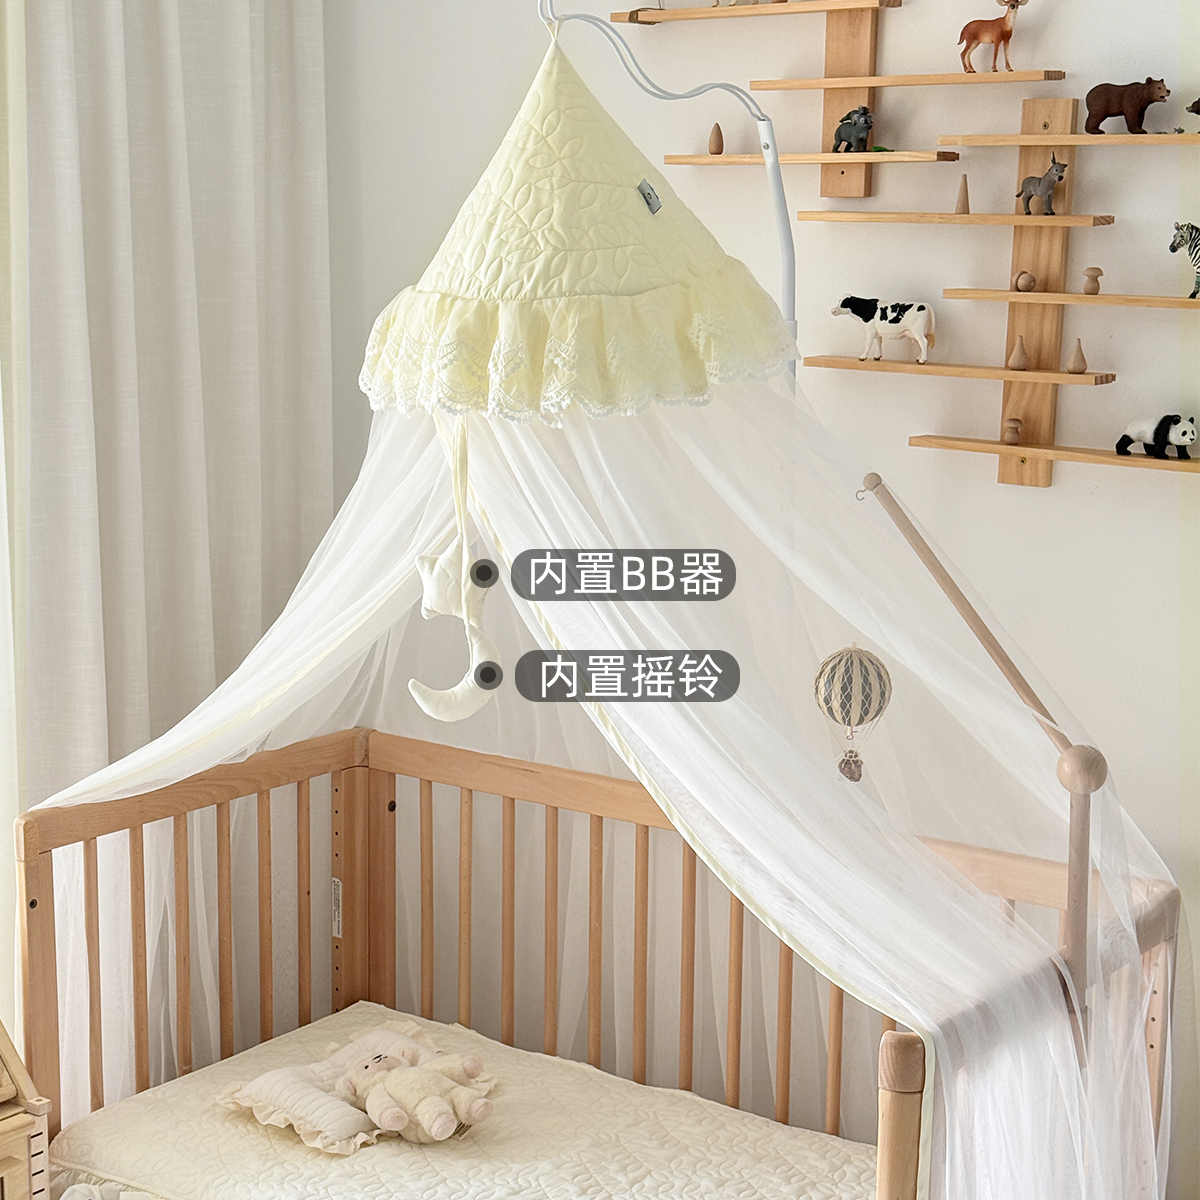 婴儿床蚊帐a类全罩式通用儿童拼接床 宝宝专用防蚊公主风遮光纱幔